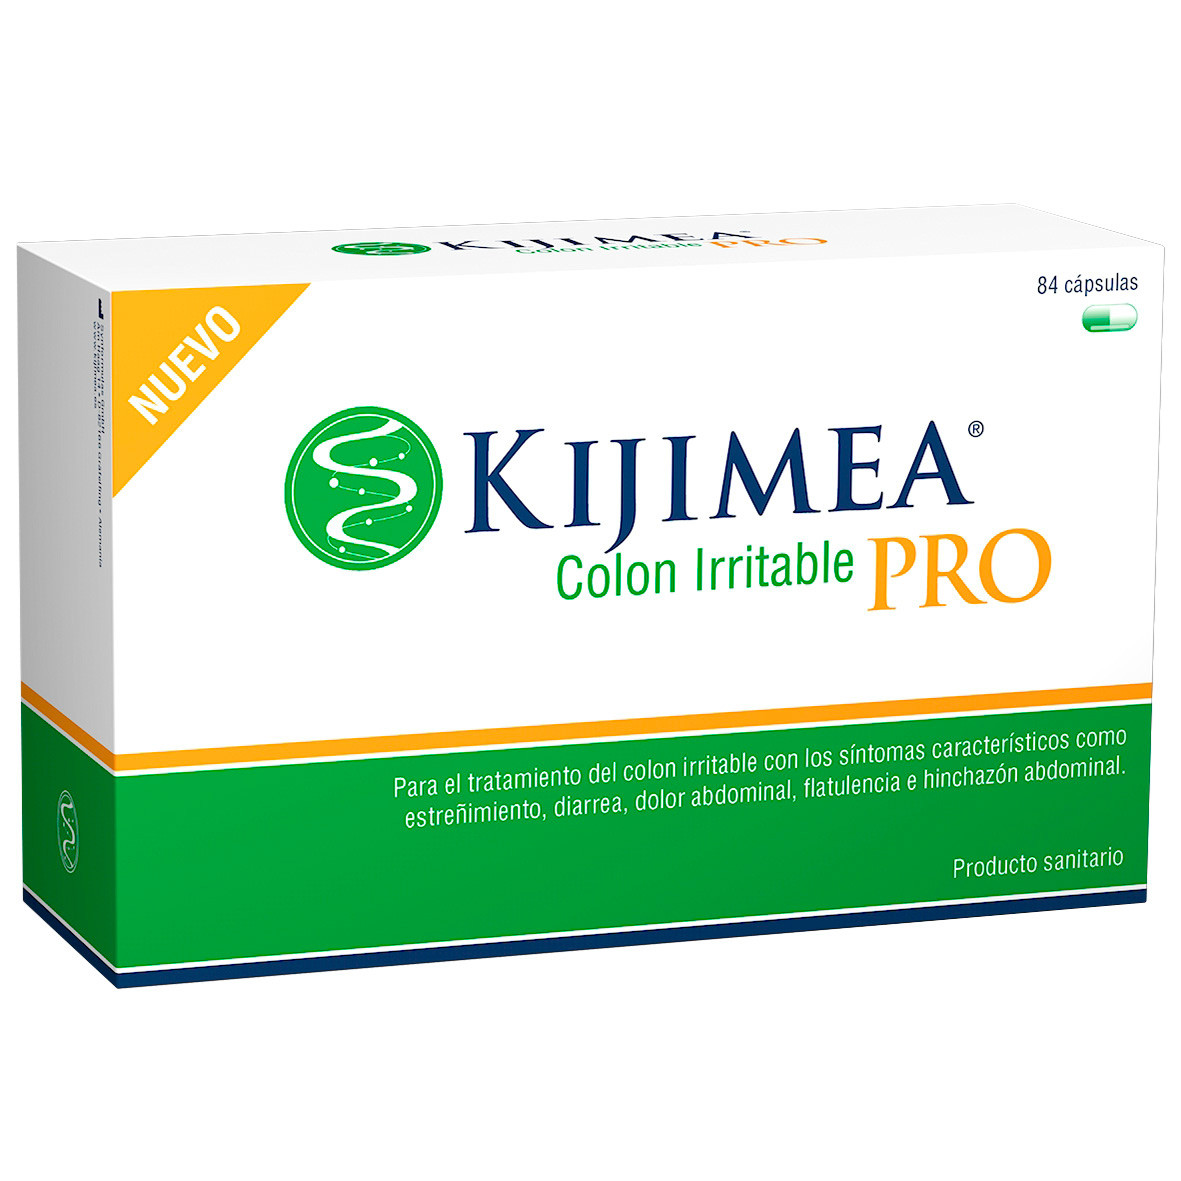 Imagen de Kijimea colon irritable pro 84 cápsulas